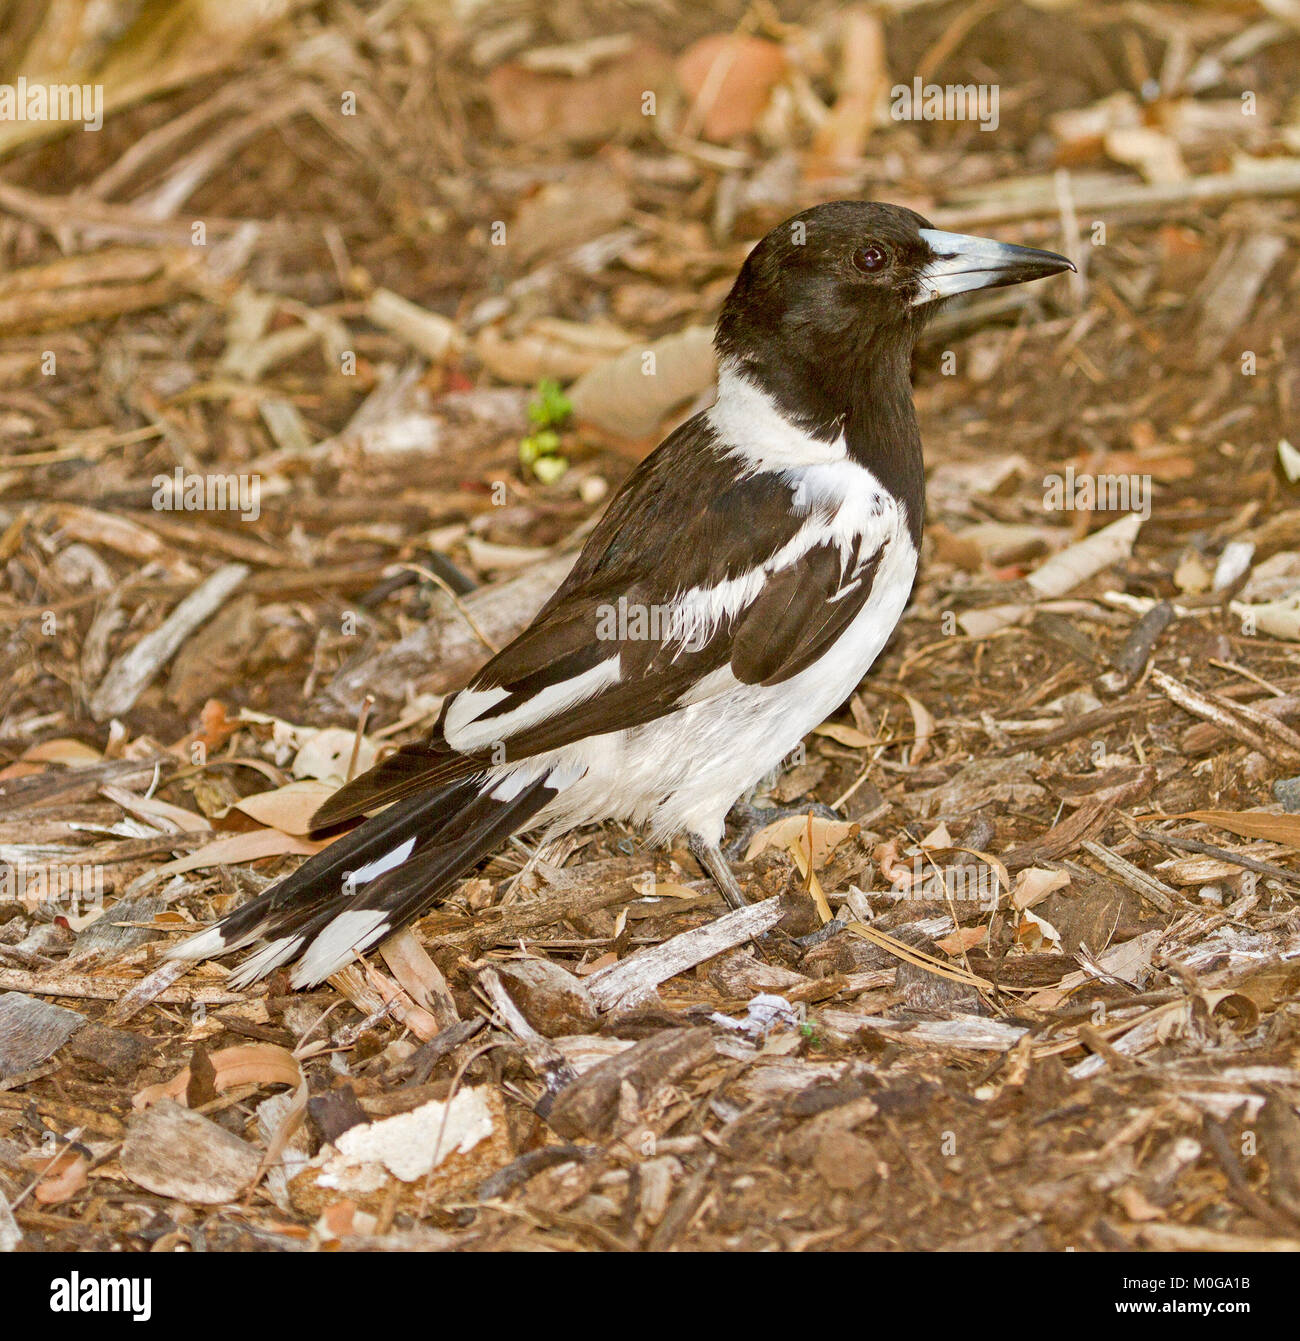 Pied butcherbird, Cracticus nigrogularis, with alert expression, on floor of forest at Hervey Bay, Queensland Australia Stock Photo